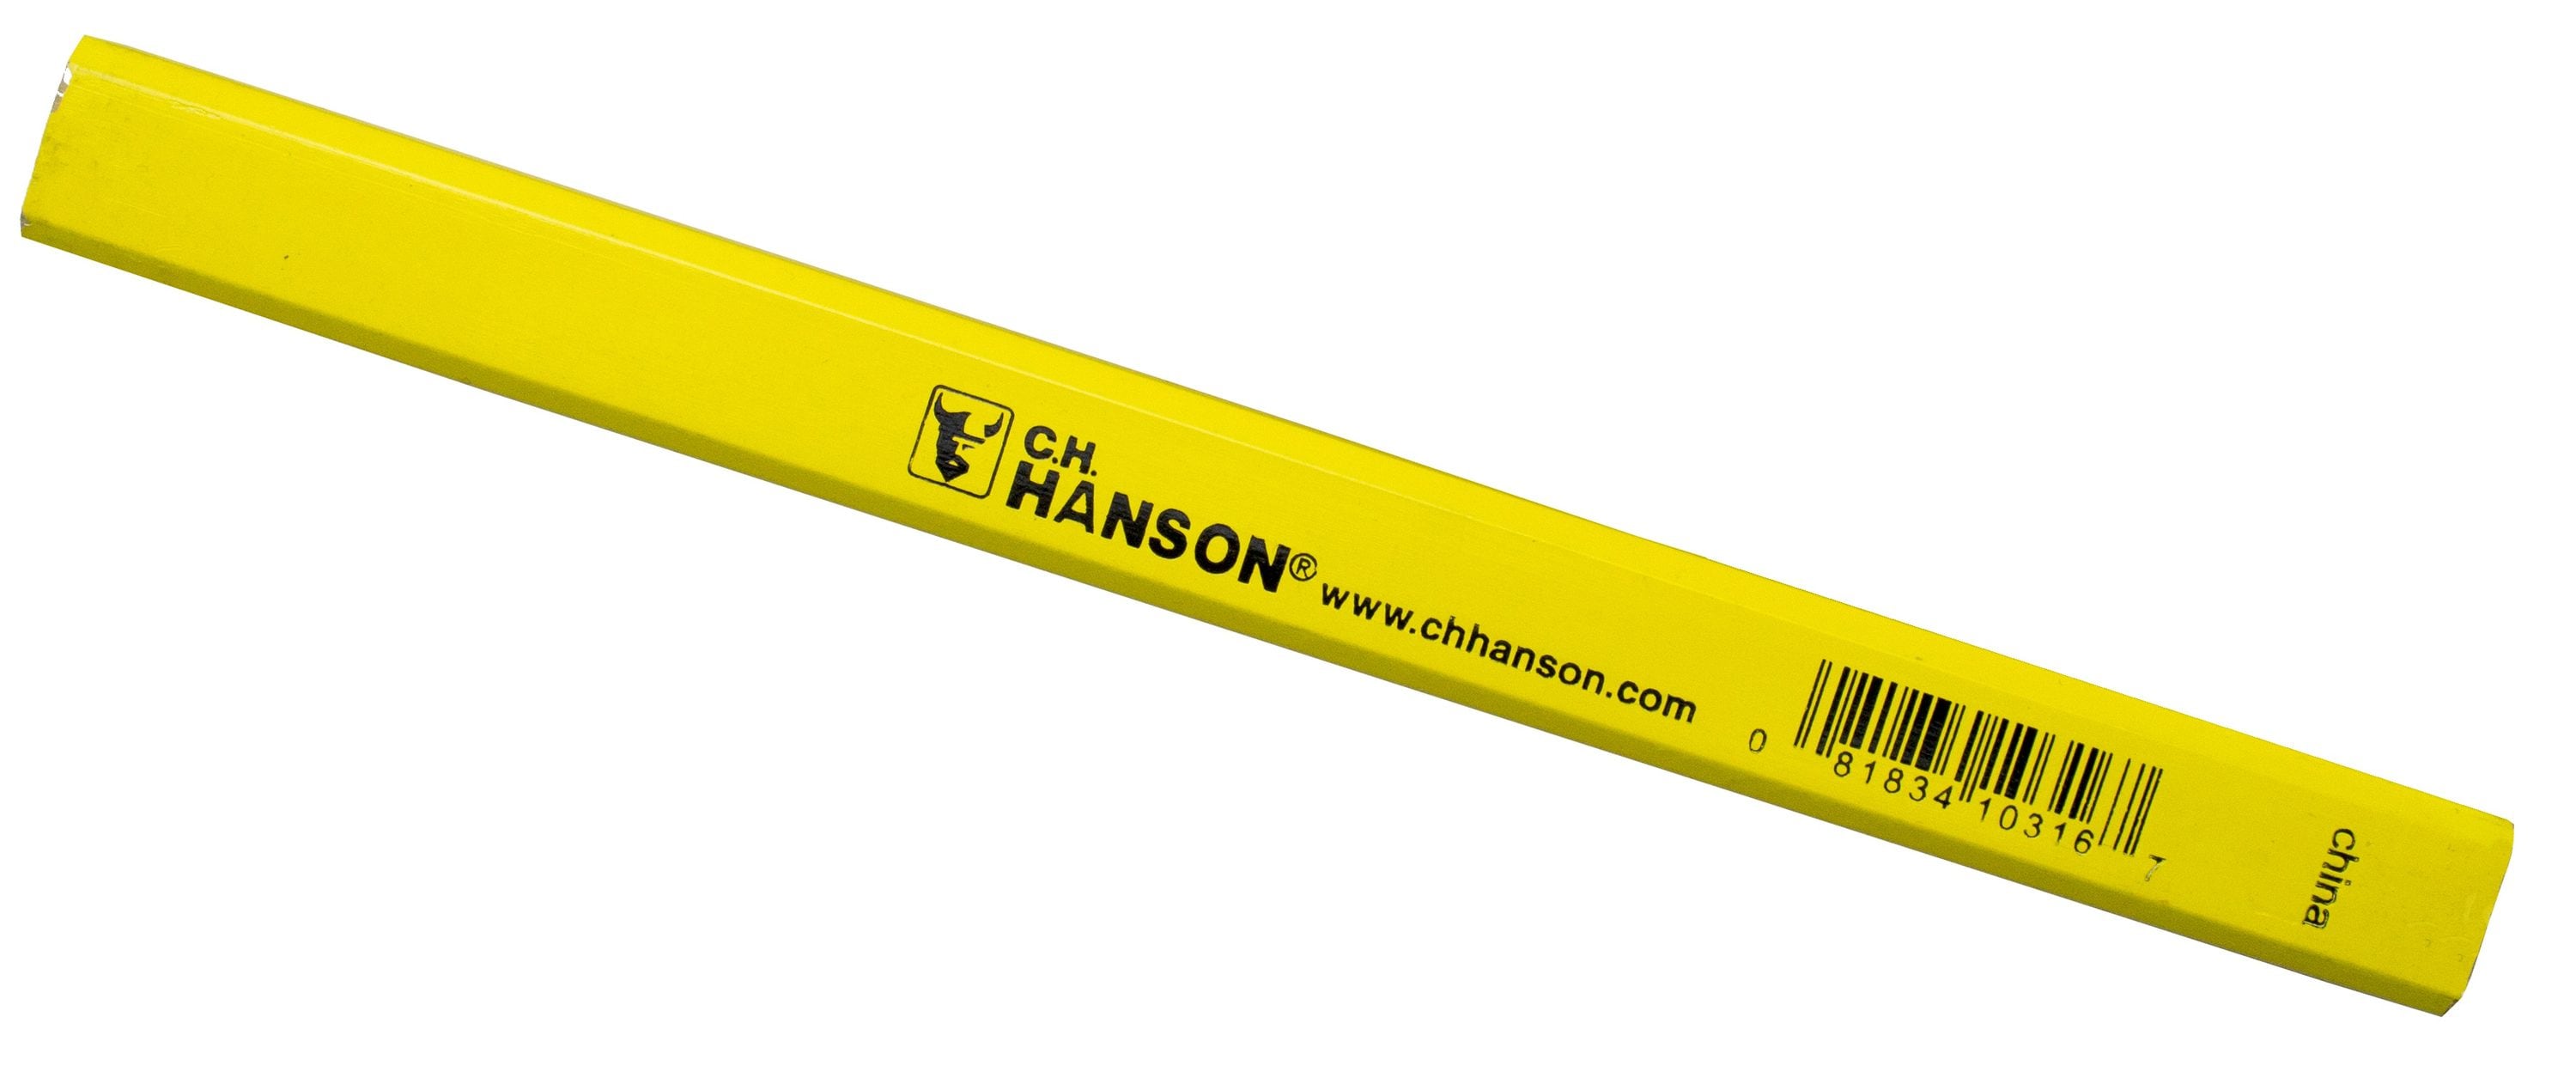 C. H. Hanson Lumber Marking Crayon - Red